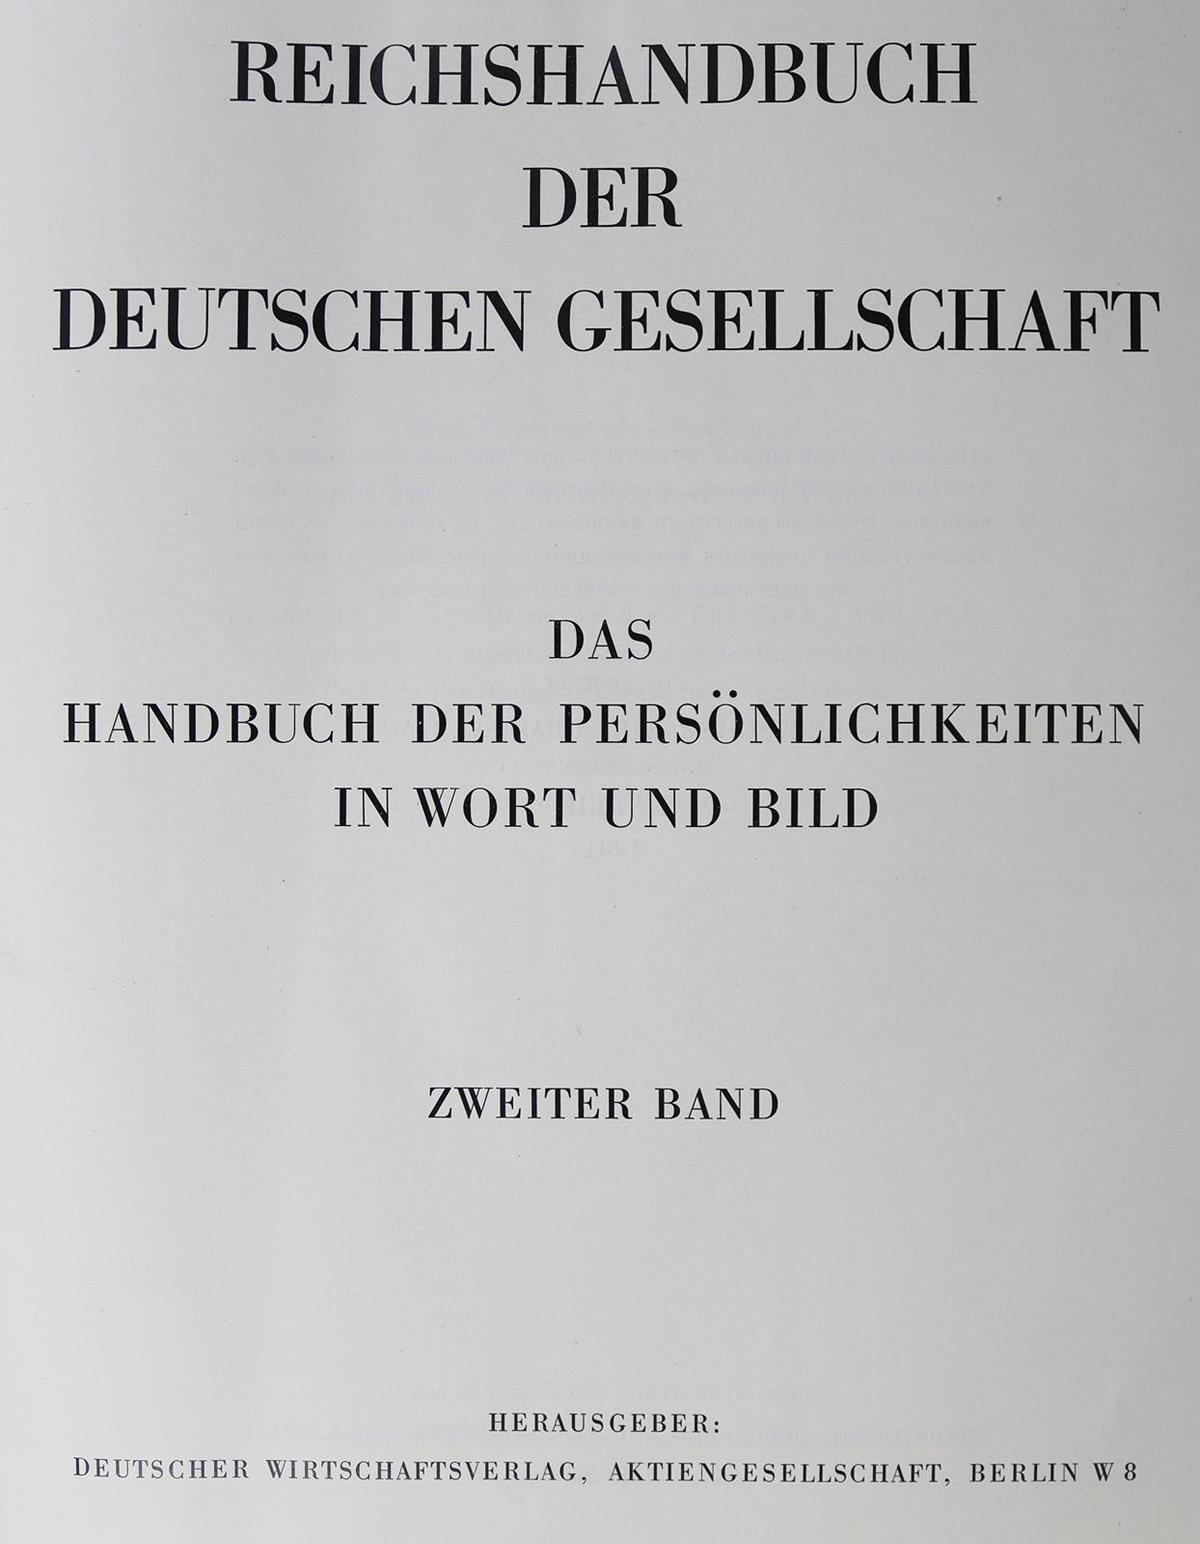 Reichshandbuch der Deutschen Gesellschaft. | Bild Nr.1